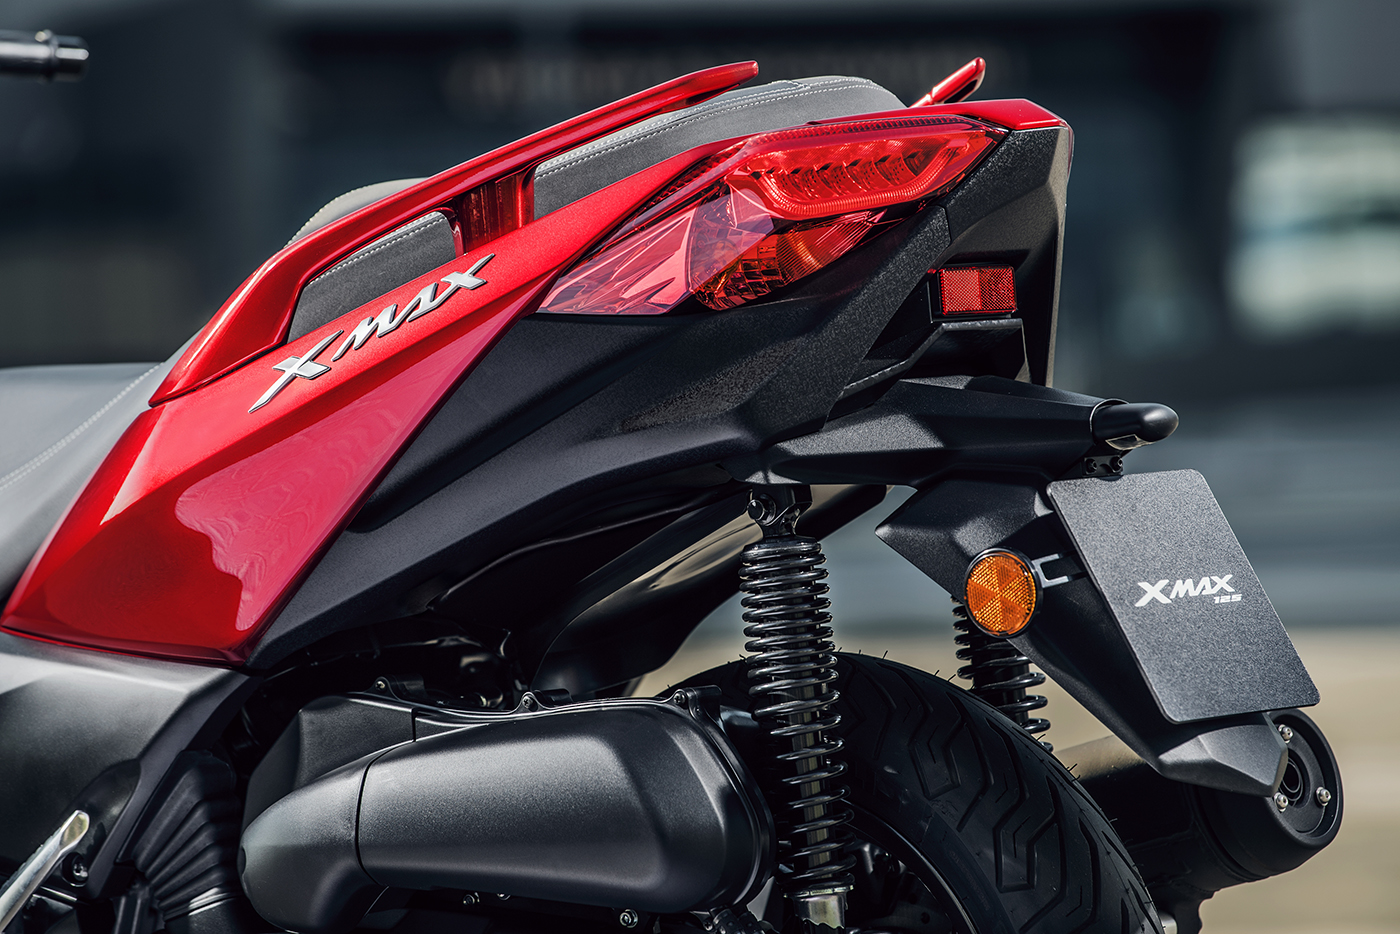  Yamaha  X Max 125  2018 khc tinh  ca Honda PCX tr nh l ng